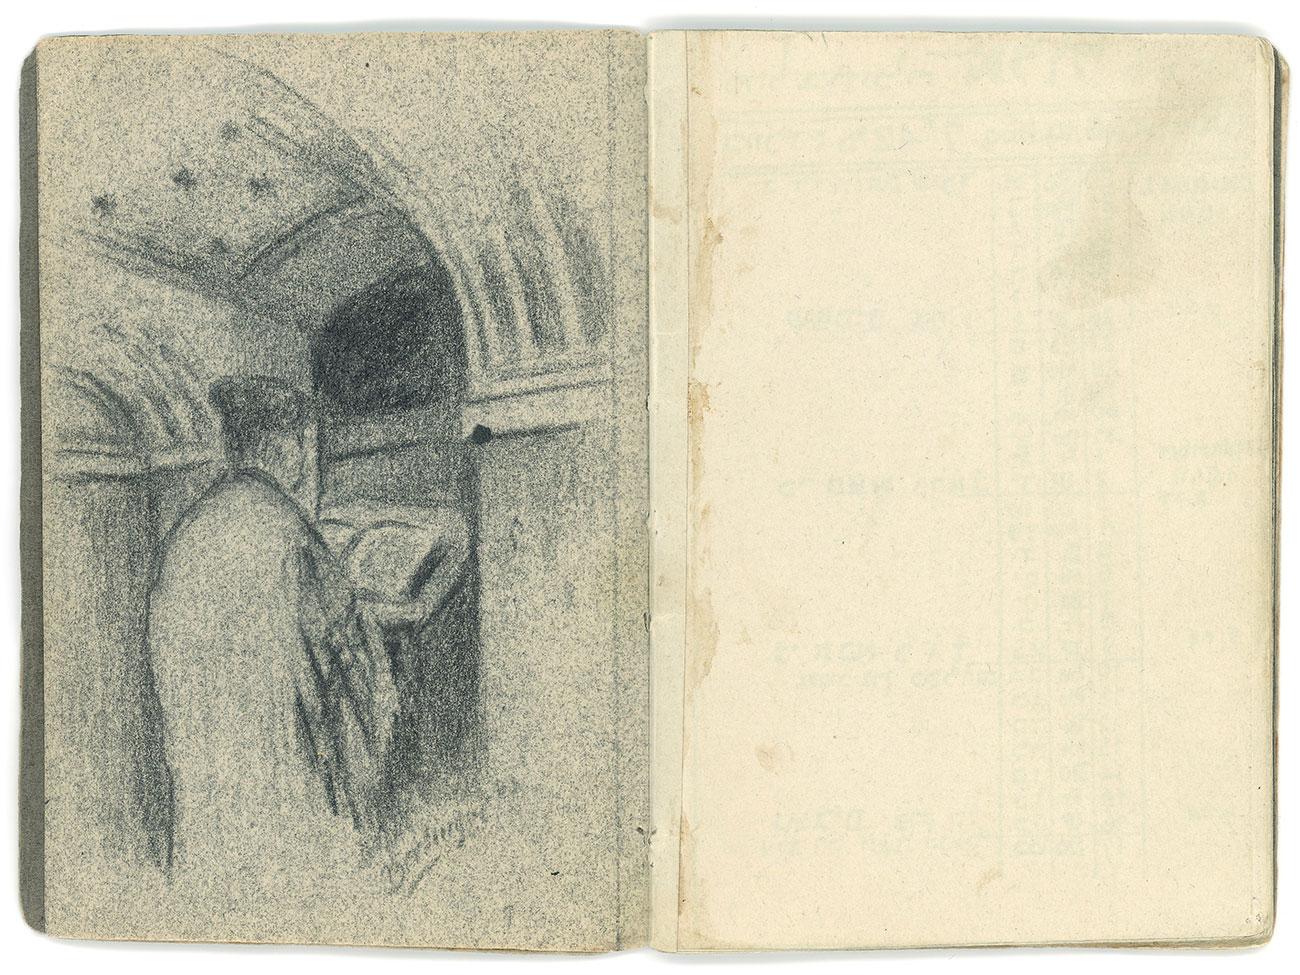 דף מתוך לוח השנה ועליו ציור של חזן מתפלל לפני העמוד בבית כנסת בגטו טרזין עם חתימתו של ברלינגר